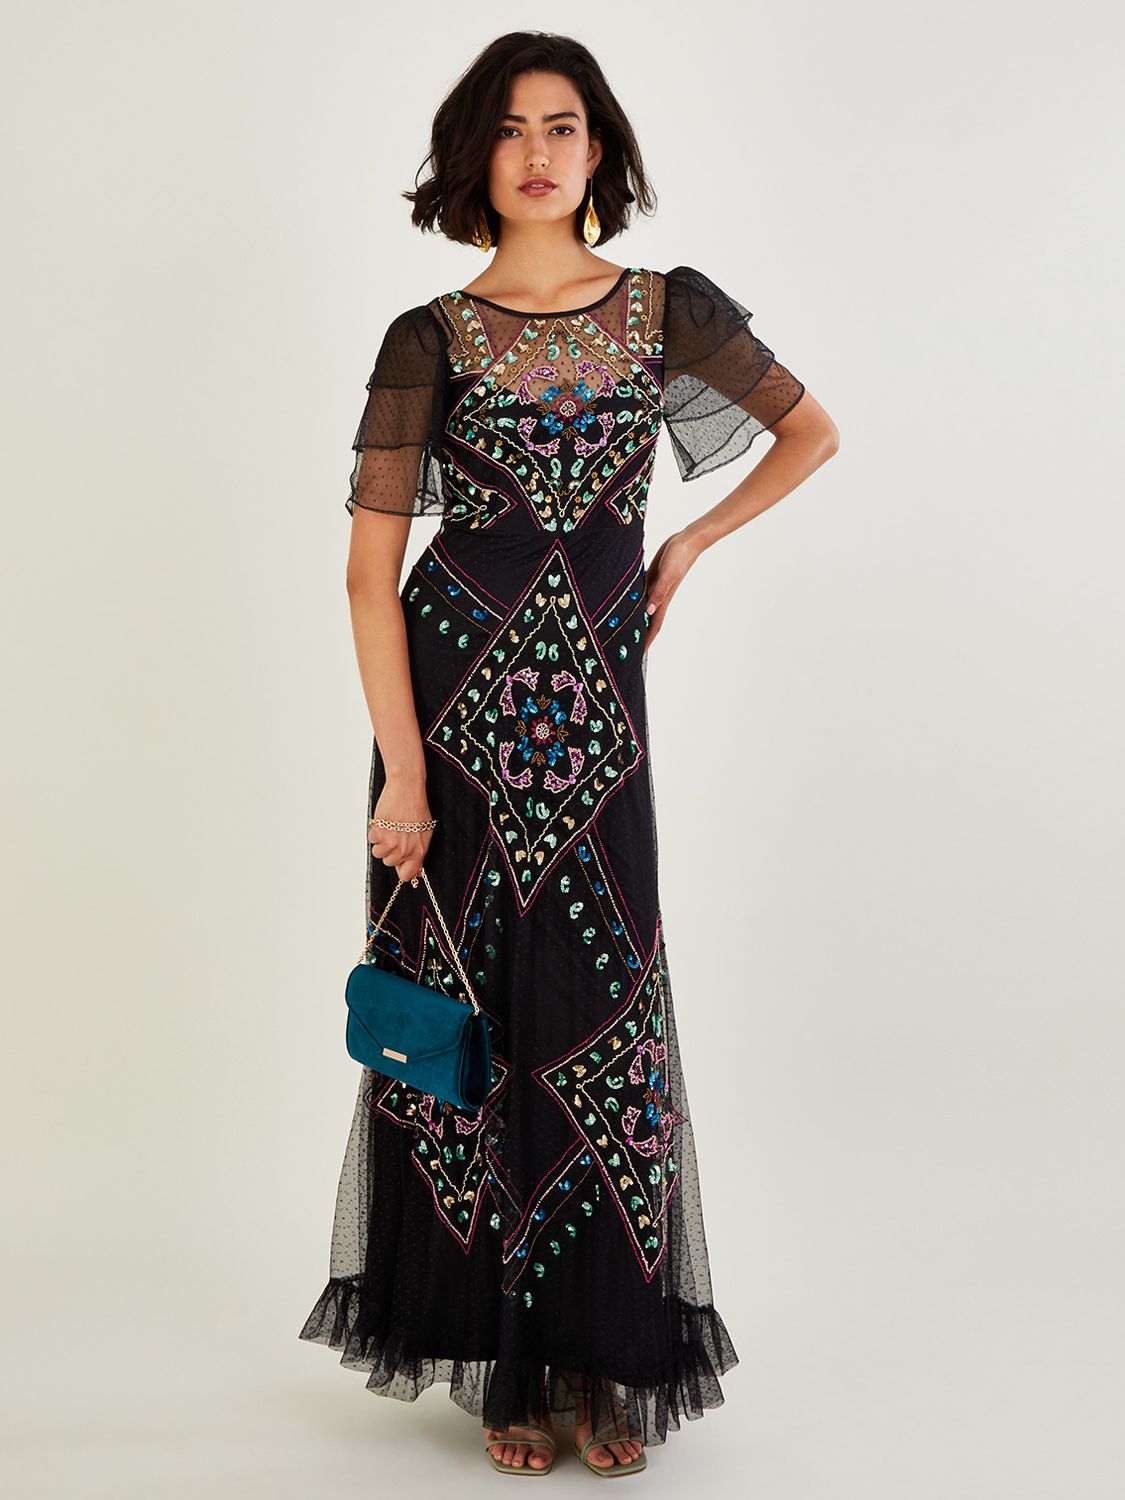 Petite Black Maxi Dress | John Lewis & Partners